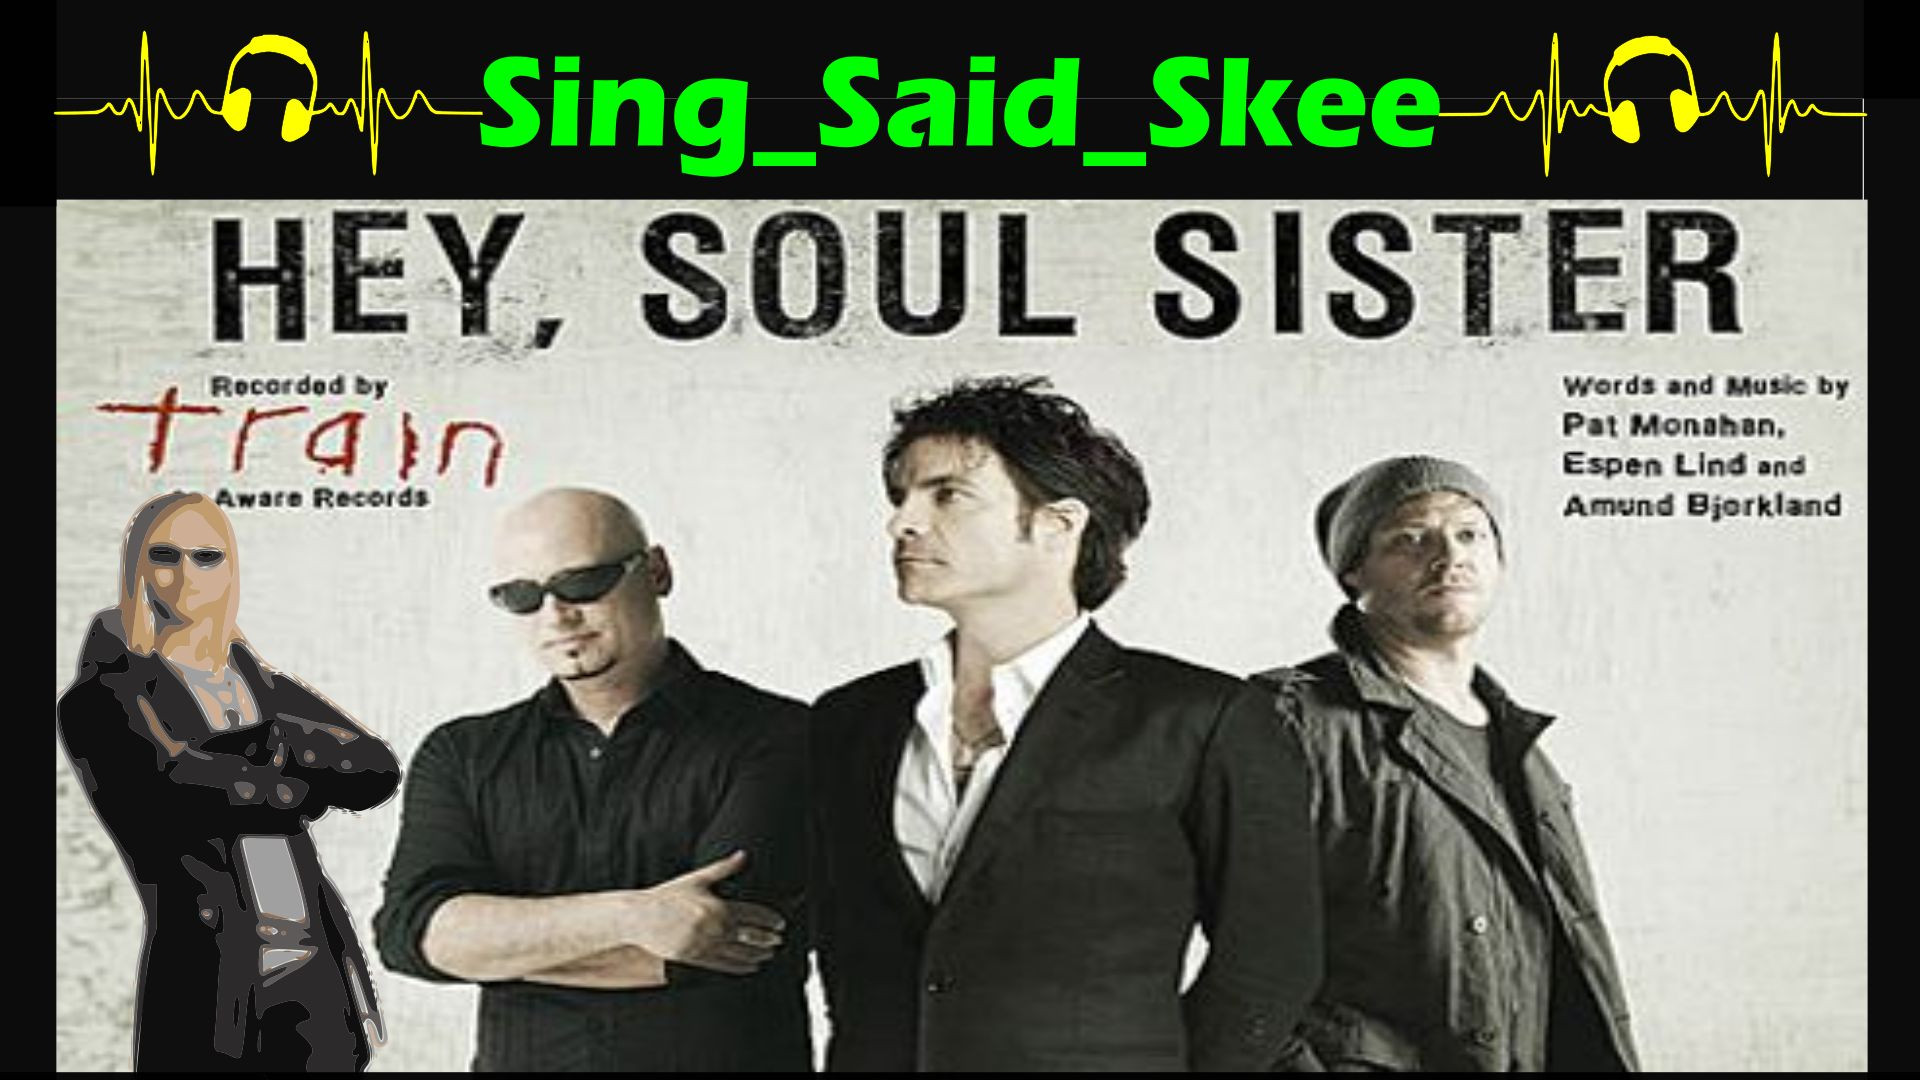 Hey, Soul Sister - Train - Sing_Said_Skee